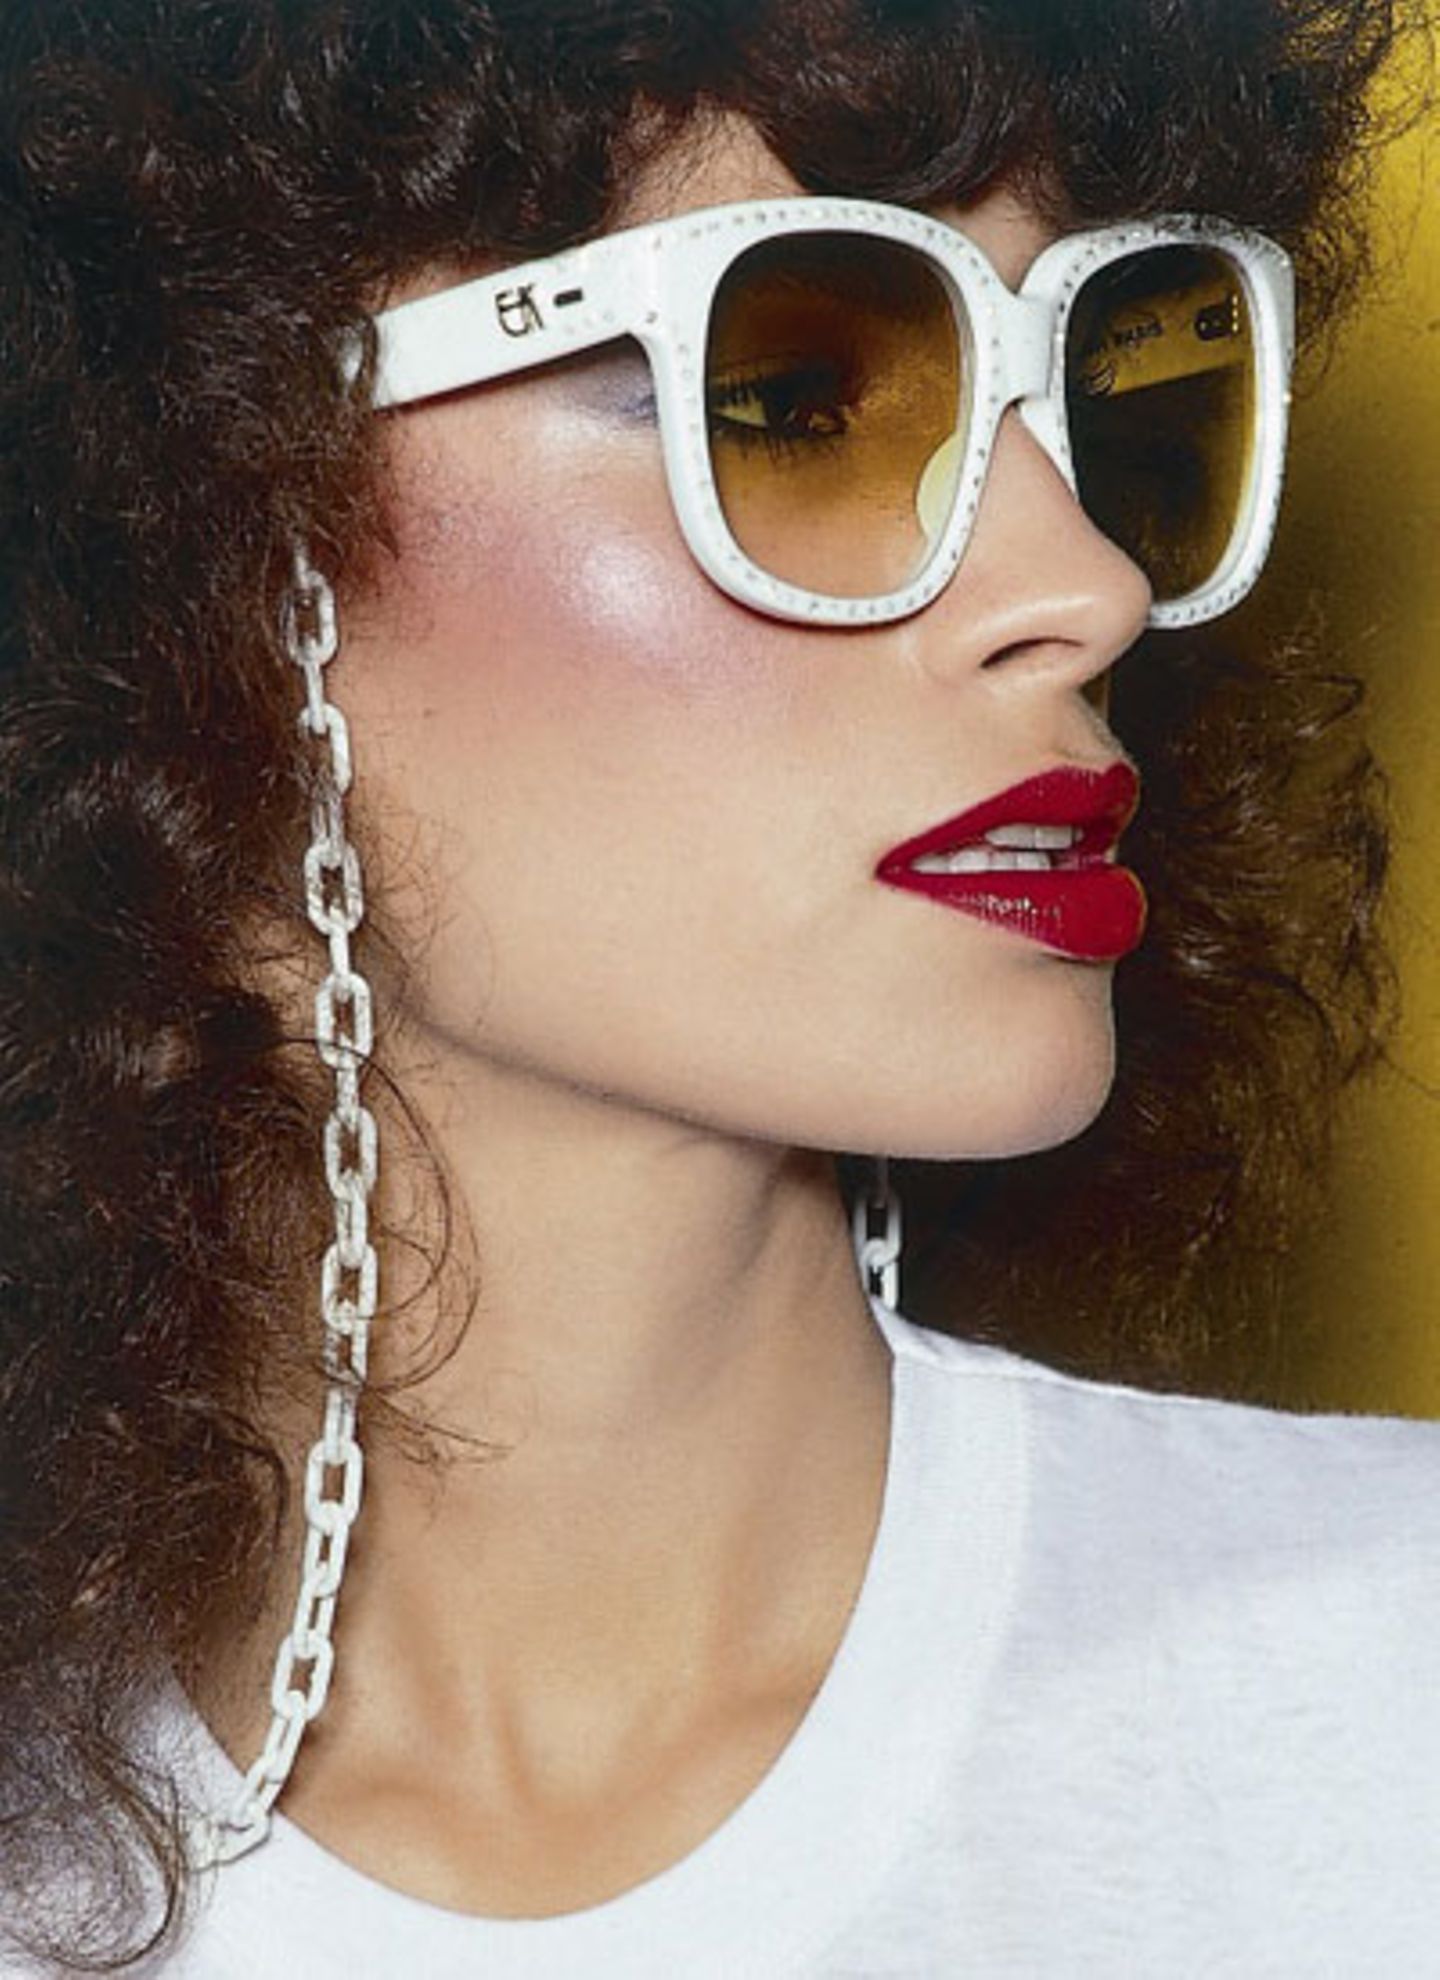 Das brasilianische Model Rio trägt eine weiße Retro-Sonnenbrille mit Brillenkette und rotem Lippenstift.